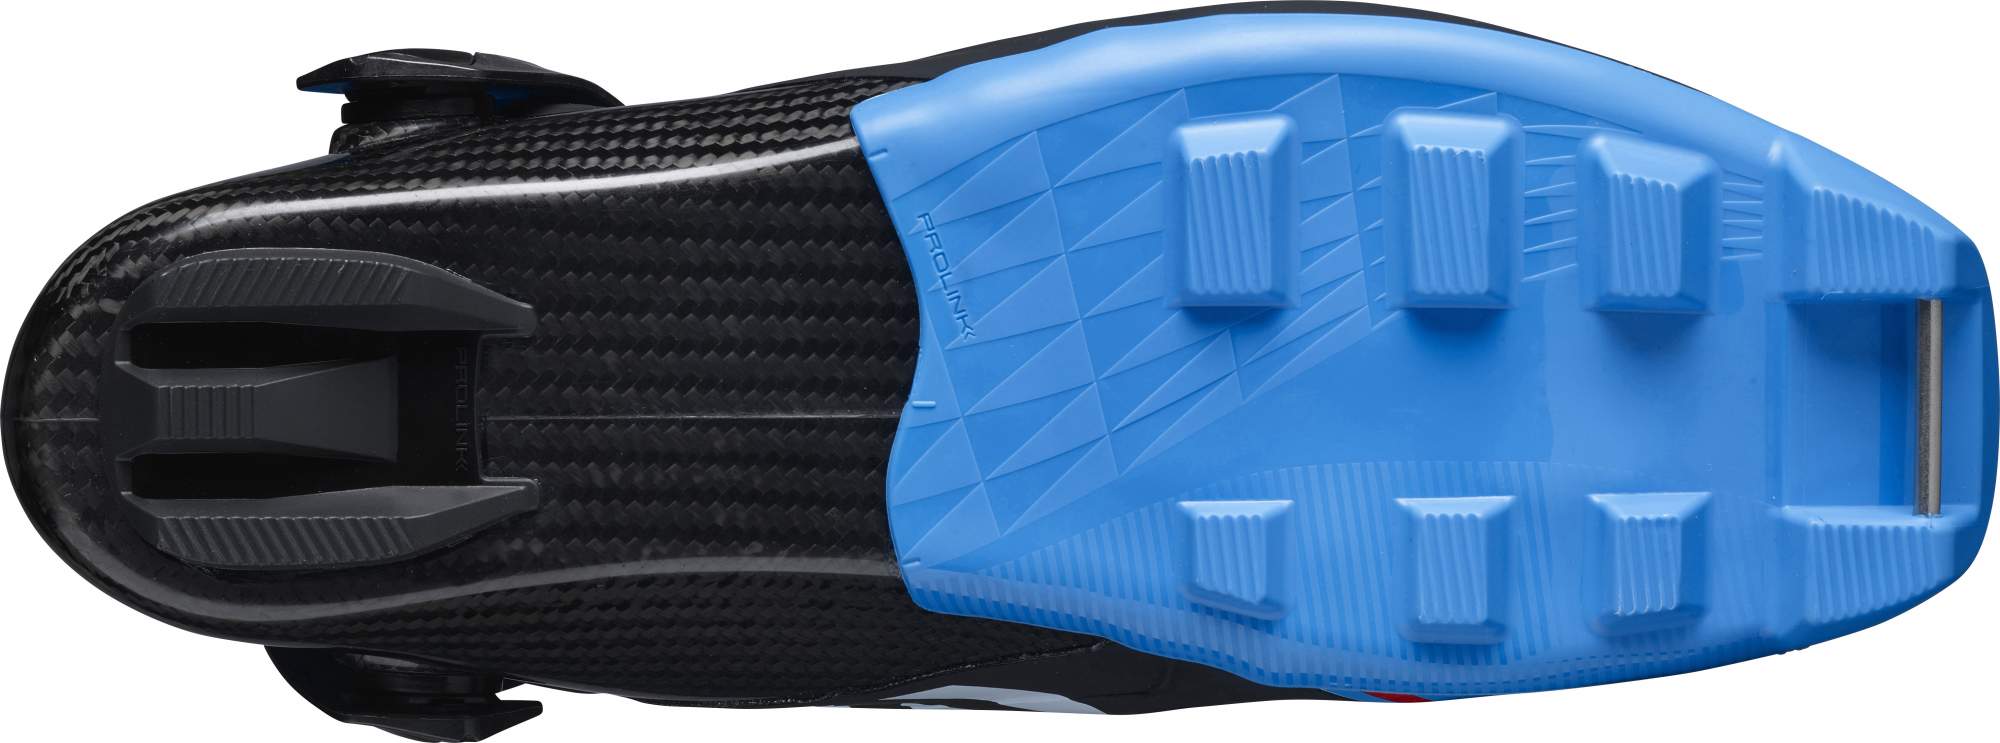 Ботинки для беговых лыж Salomon S/Lab Carbon Skate Prolink 2021, black/blue, 43.5